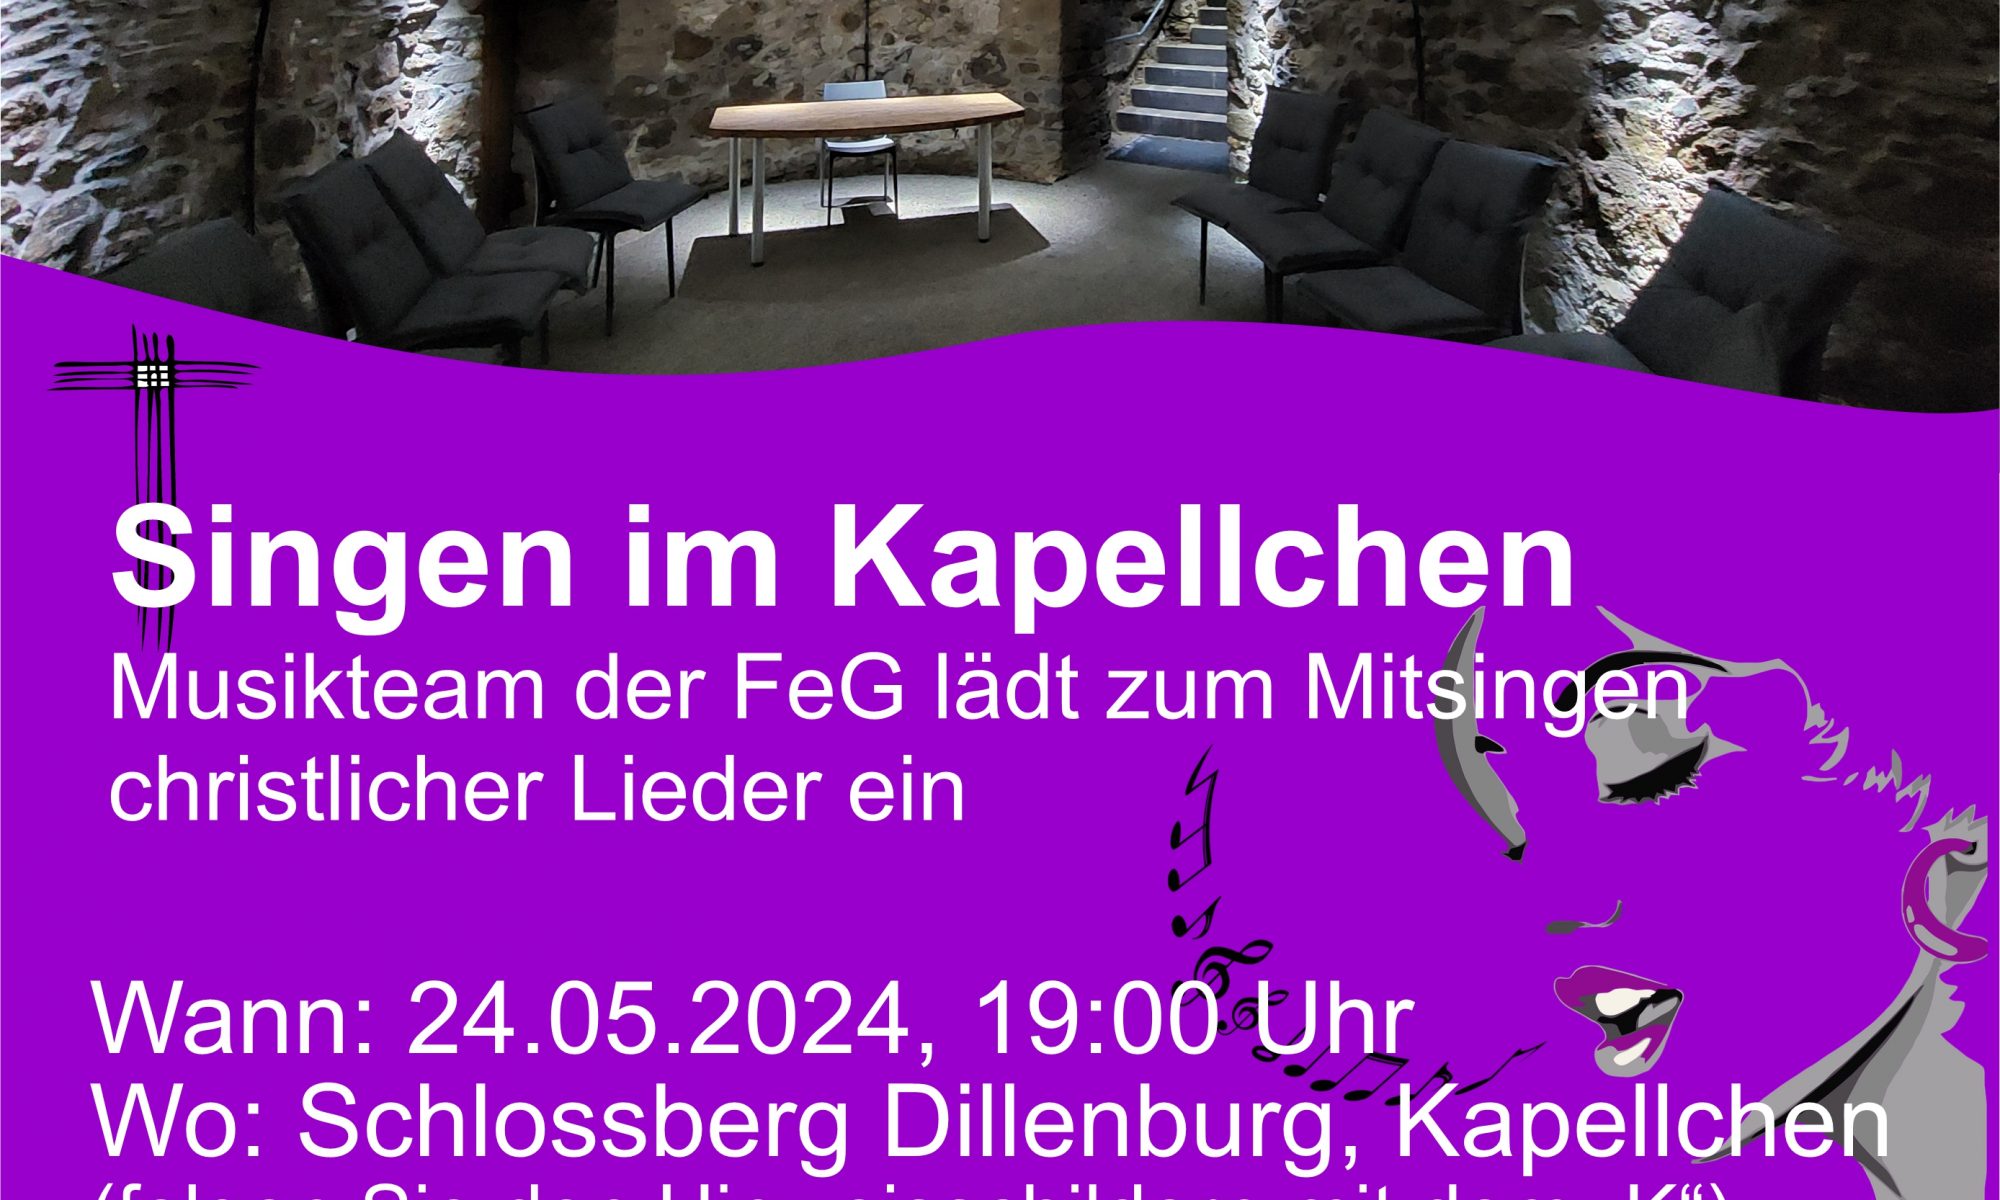 Hinweis auf die Veranstaltung "Singen im Kapellchen" mit der FeG Dillenburg am 24.05.2024.